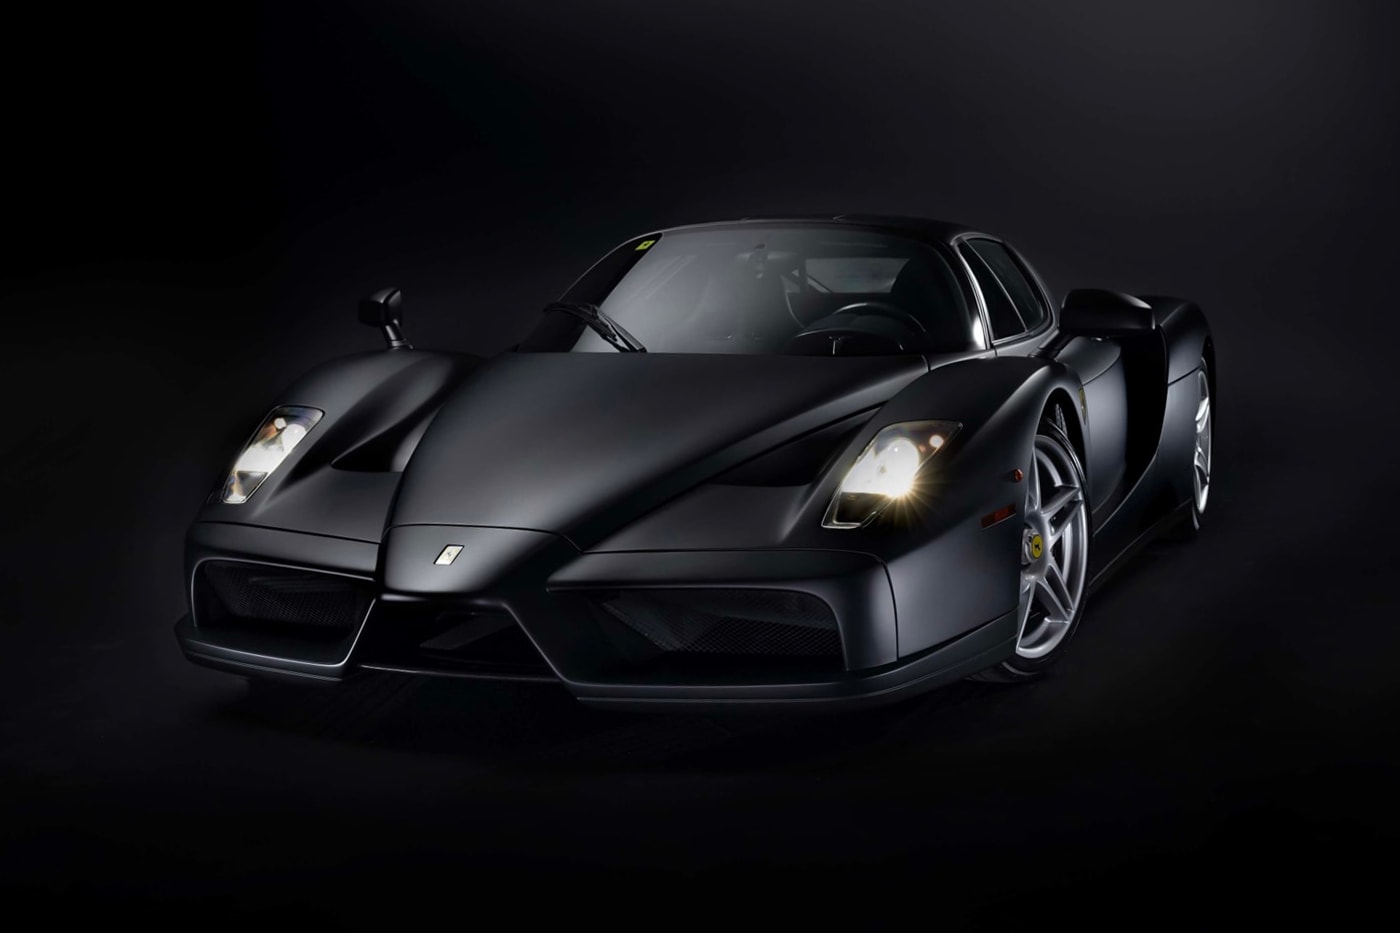 RM Sothebys Ferrari Enzo matte black triple brunei royalty maranello only nero opaco 3500 miles odometer info v 12 136069 info news